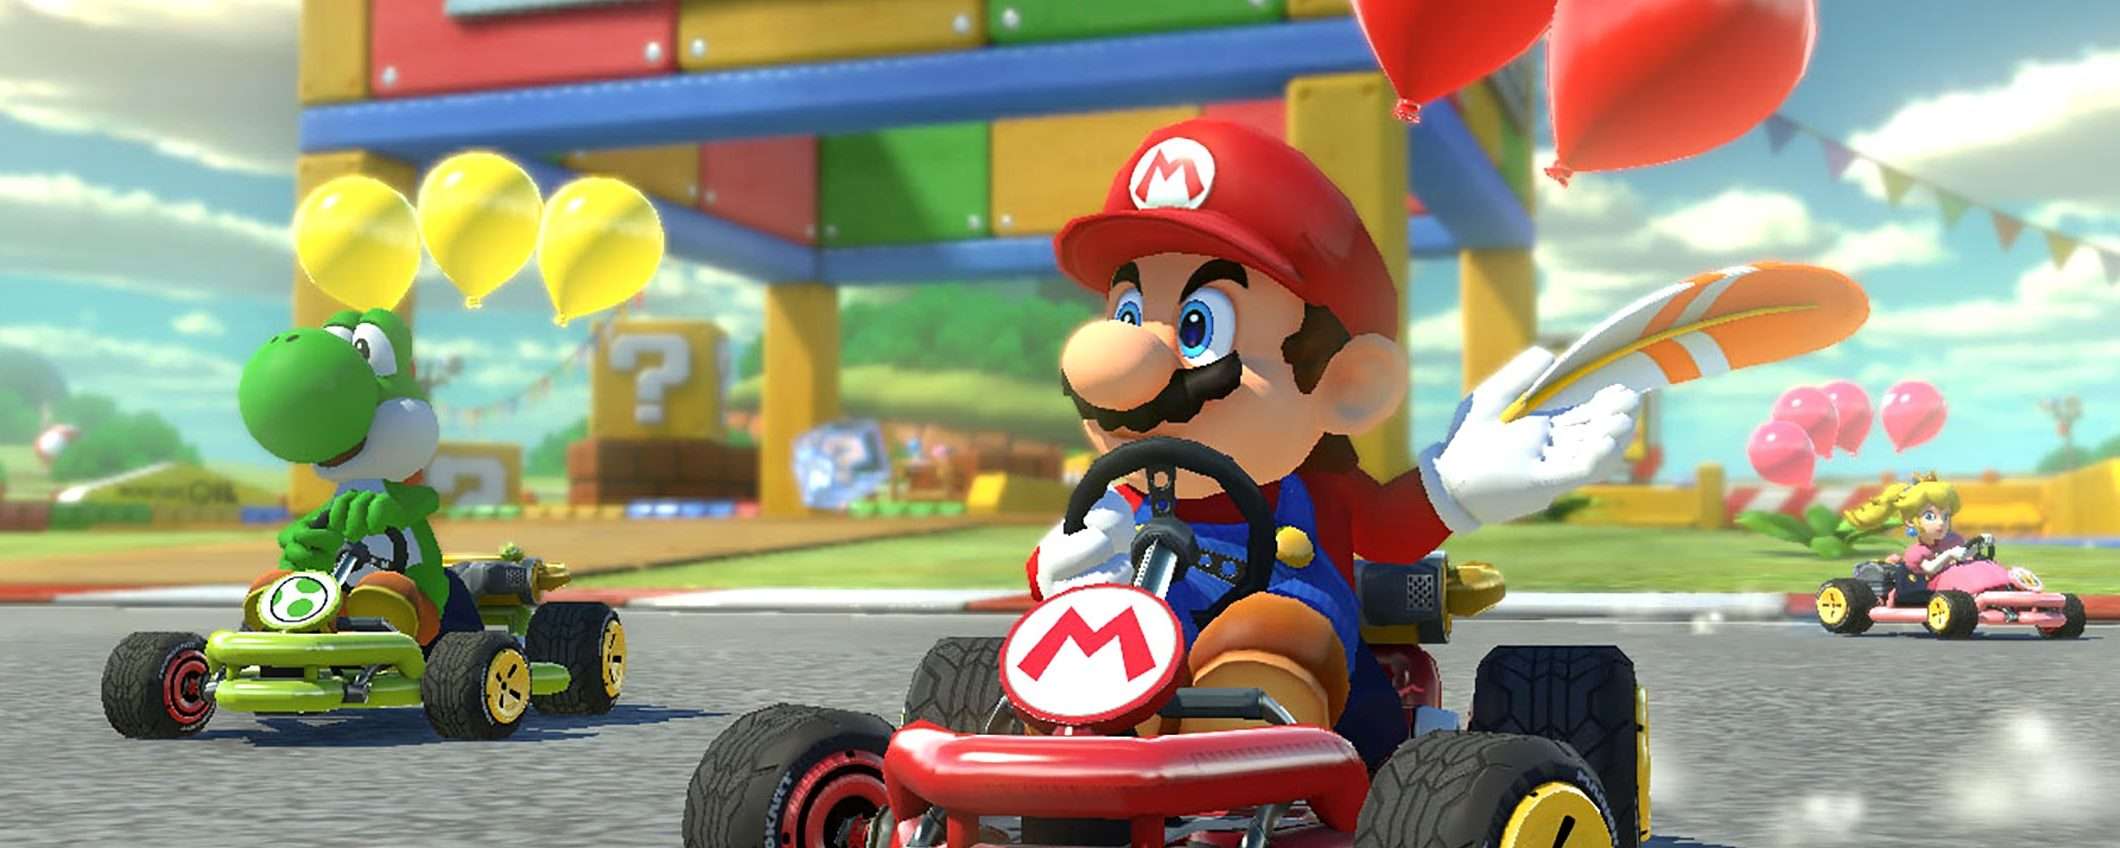 Mario Kart 8 Deluxe per Switch: prezzo mai così basso